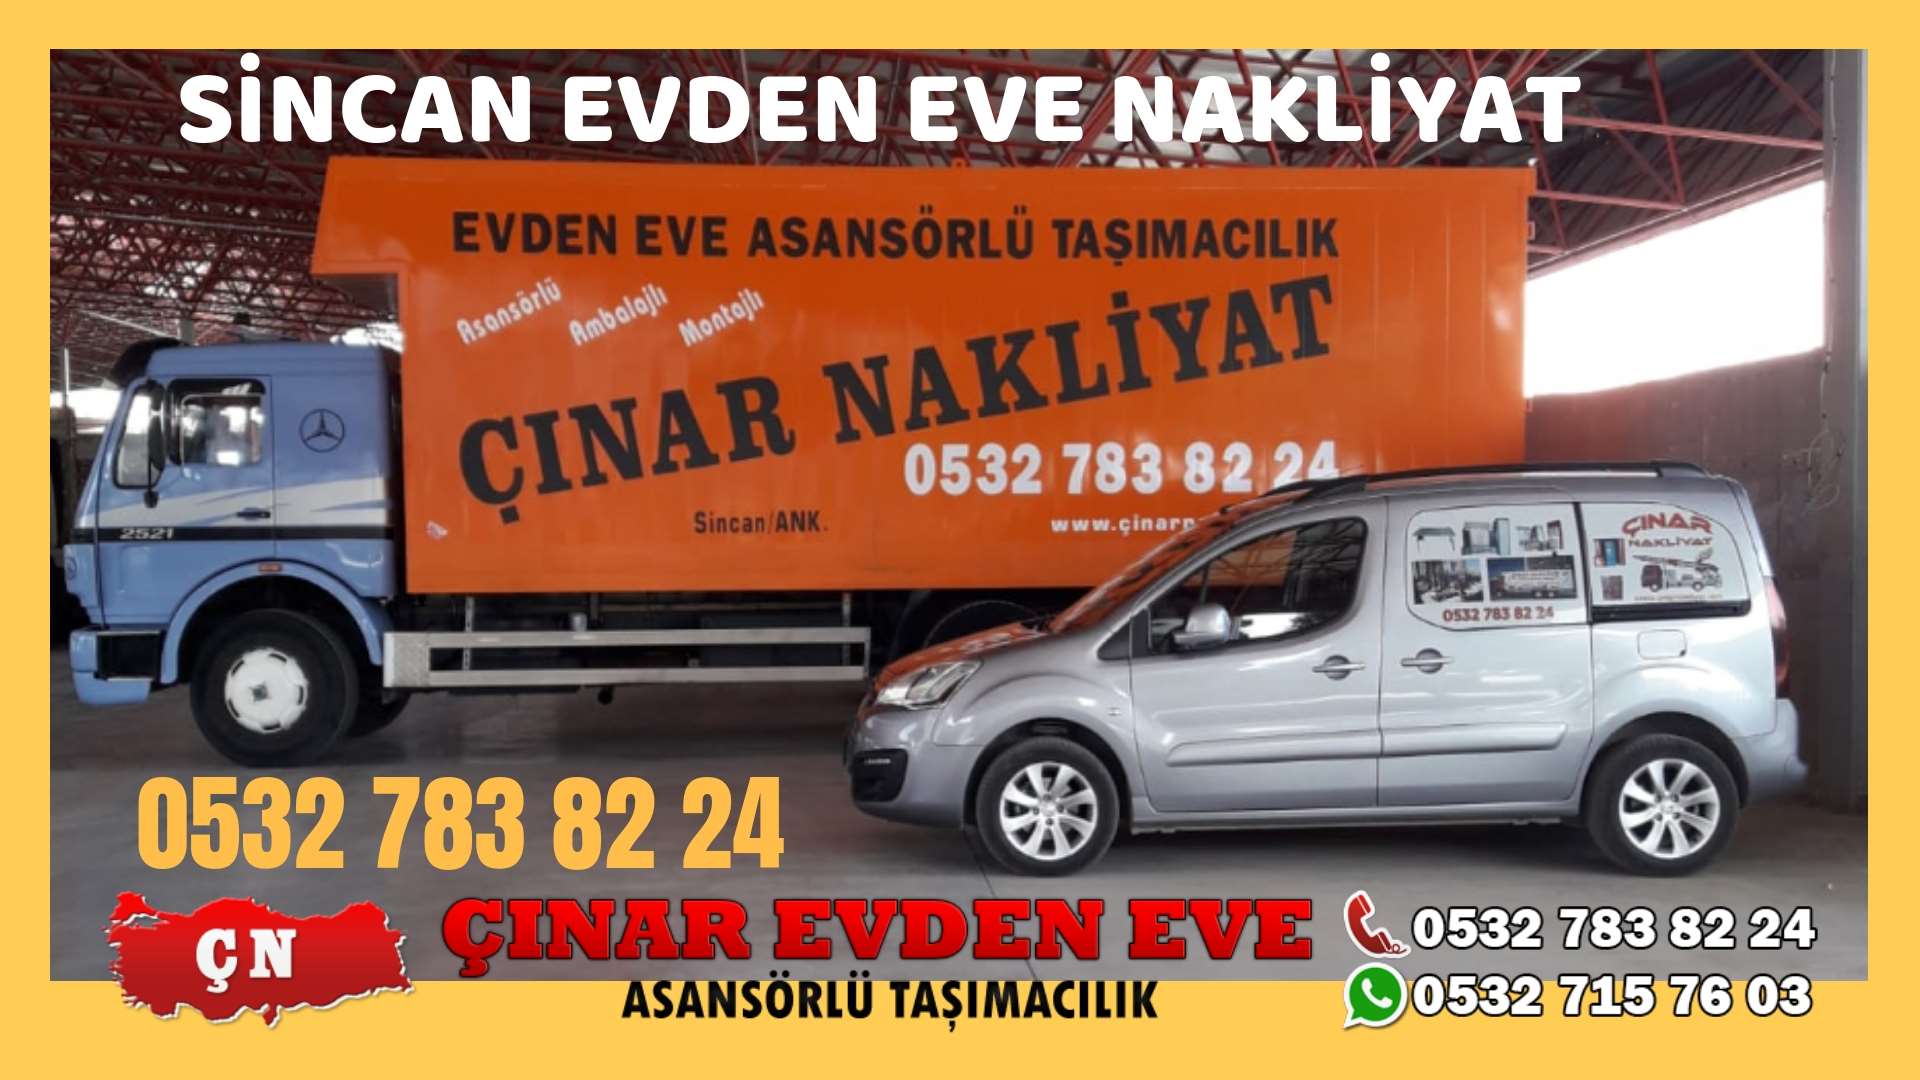 Ankara Turkuaz Toki Evden eve ev taşıma sincan nakliye fiyatları 0532 715 76 03